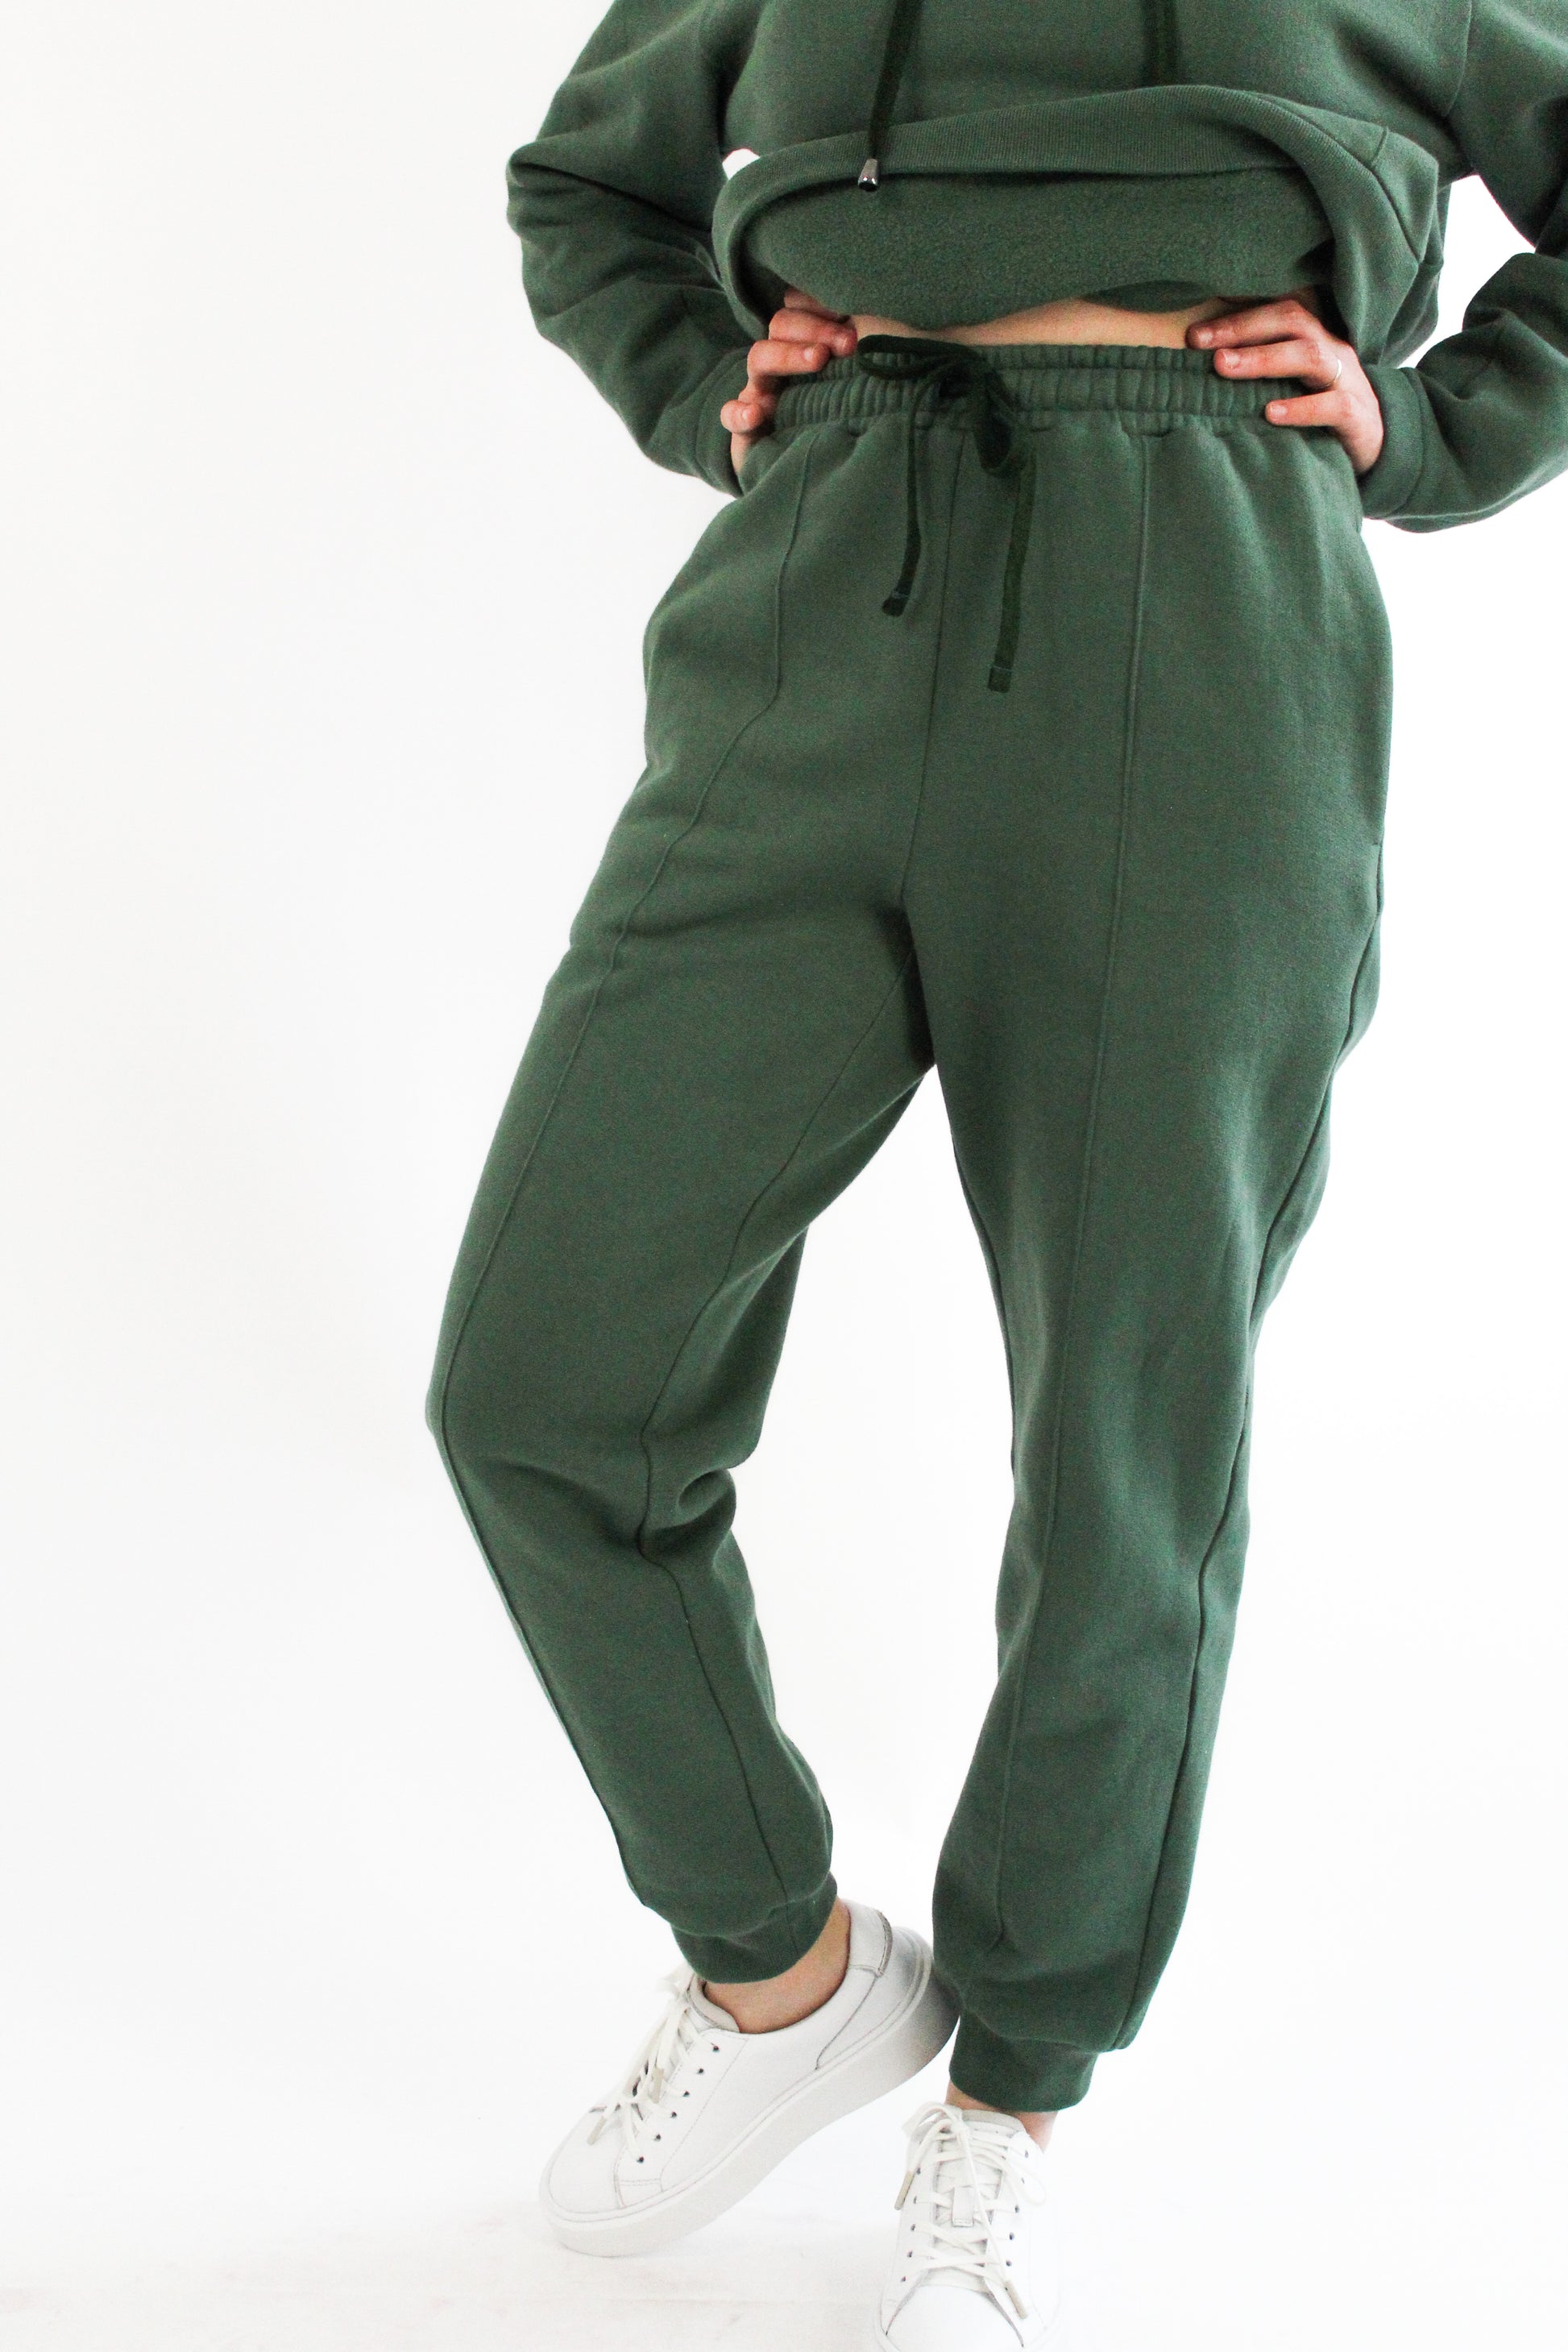 PDF Jogger Pants Sewing Pattern Women EU Size Xs-xl US 2-14